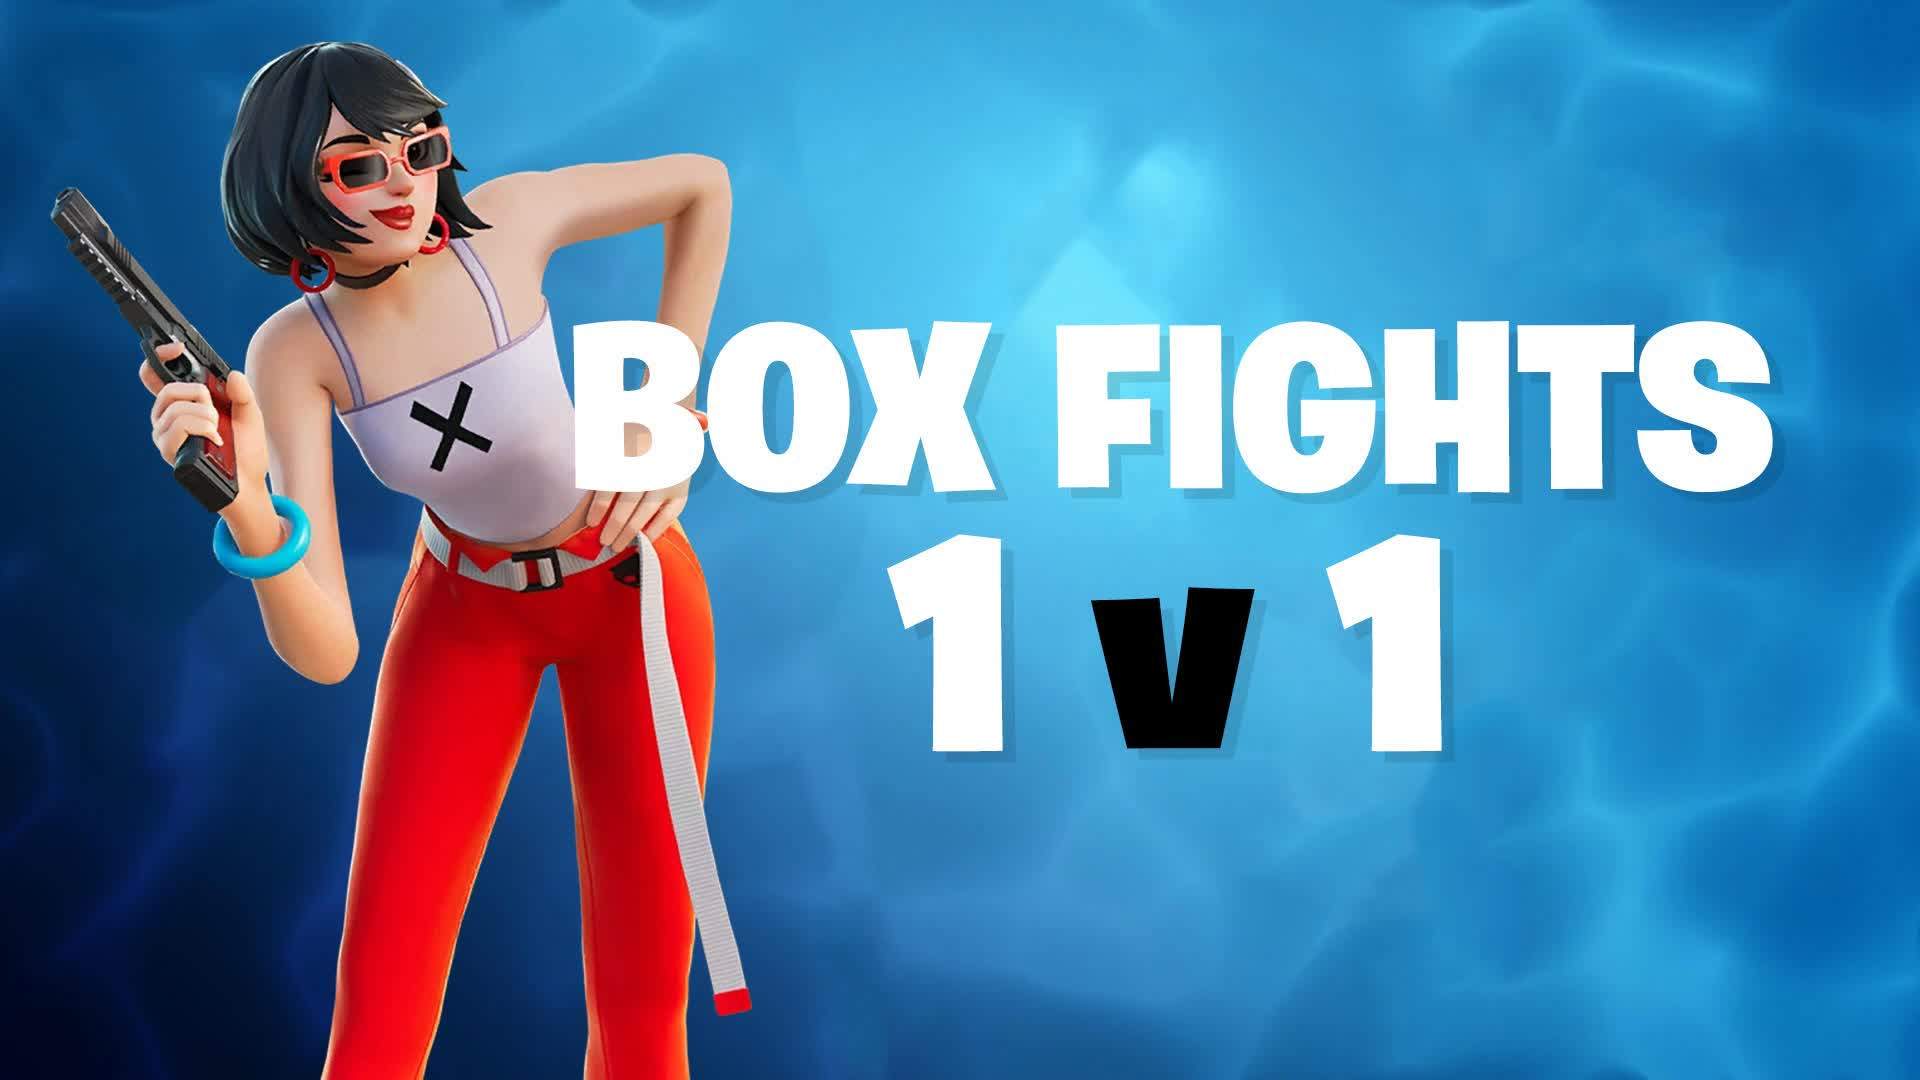 1V1 Box Fight Only Pros